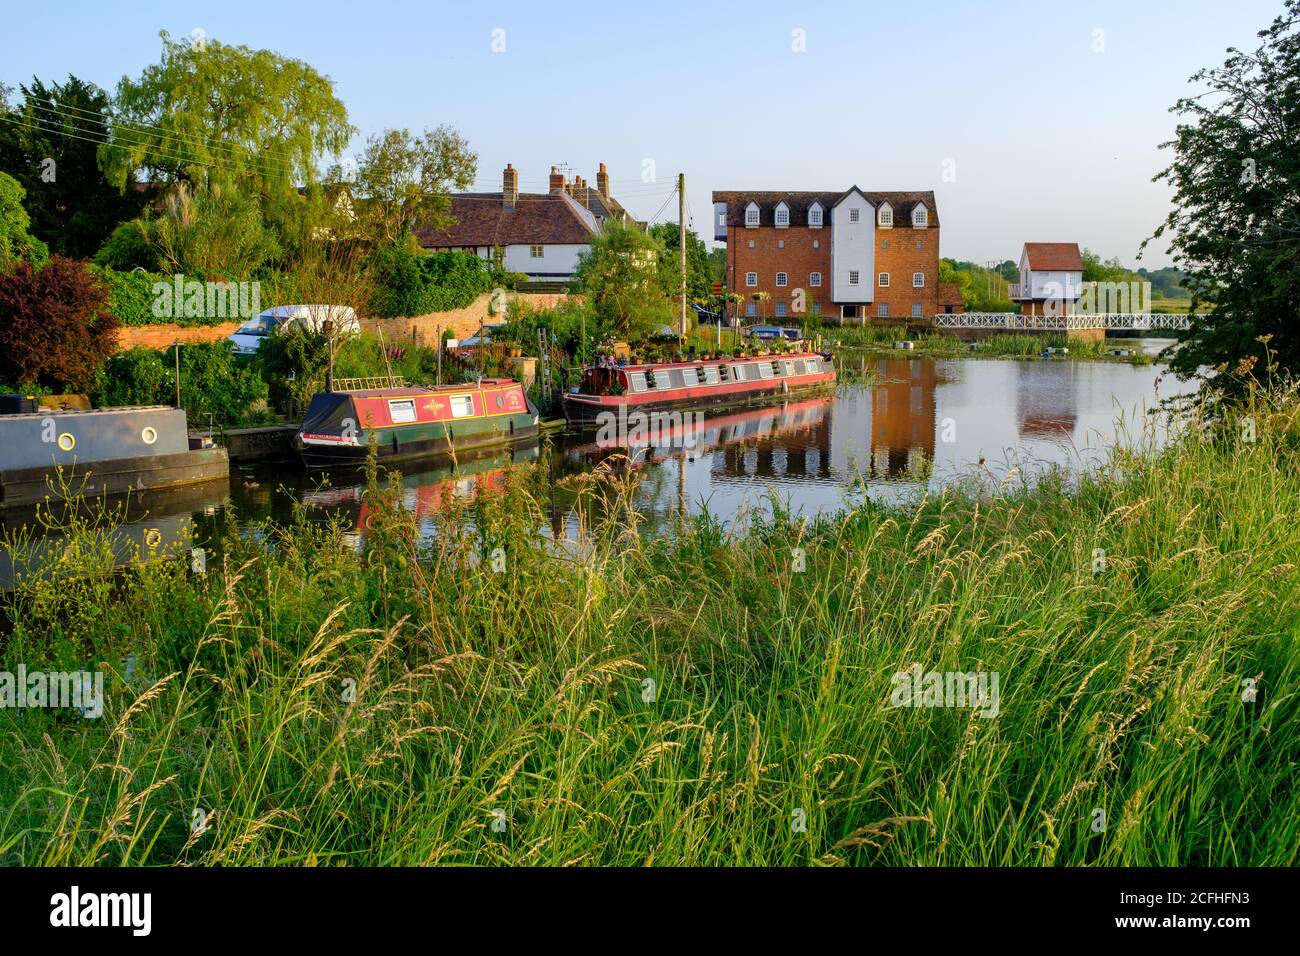 Canots à canots (Narrowboats) sur la rivière Avon lors d'une soirée en milieu d'été, Tewkesbury, Angleterre Banque D'Images